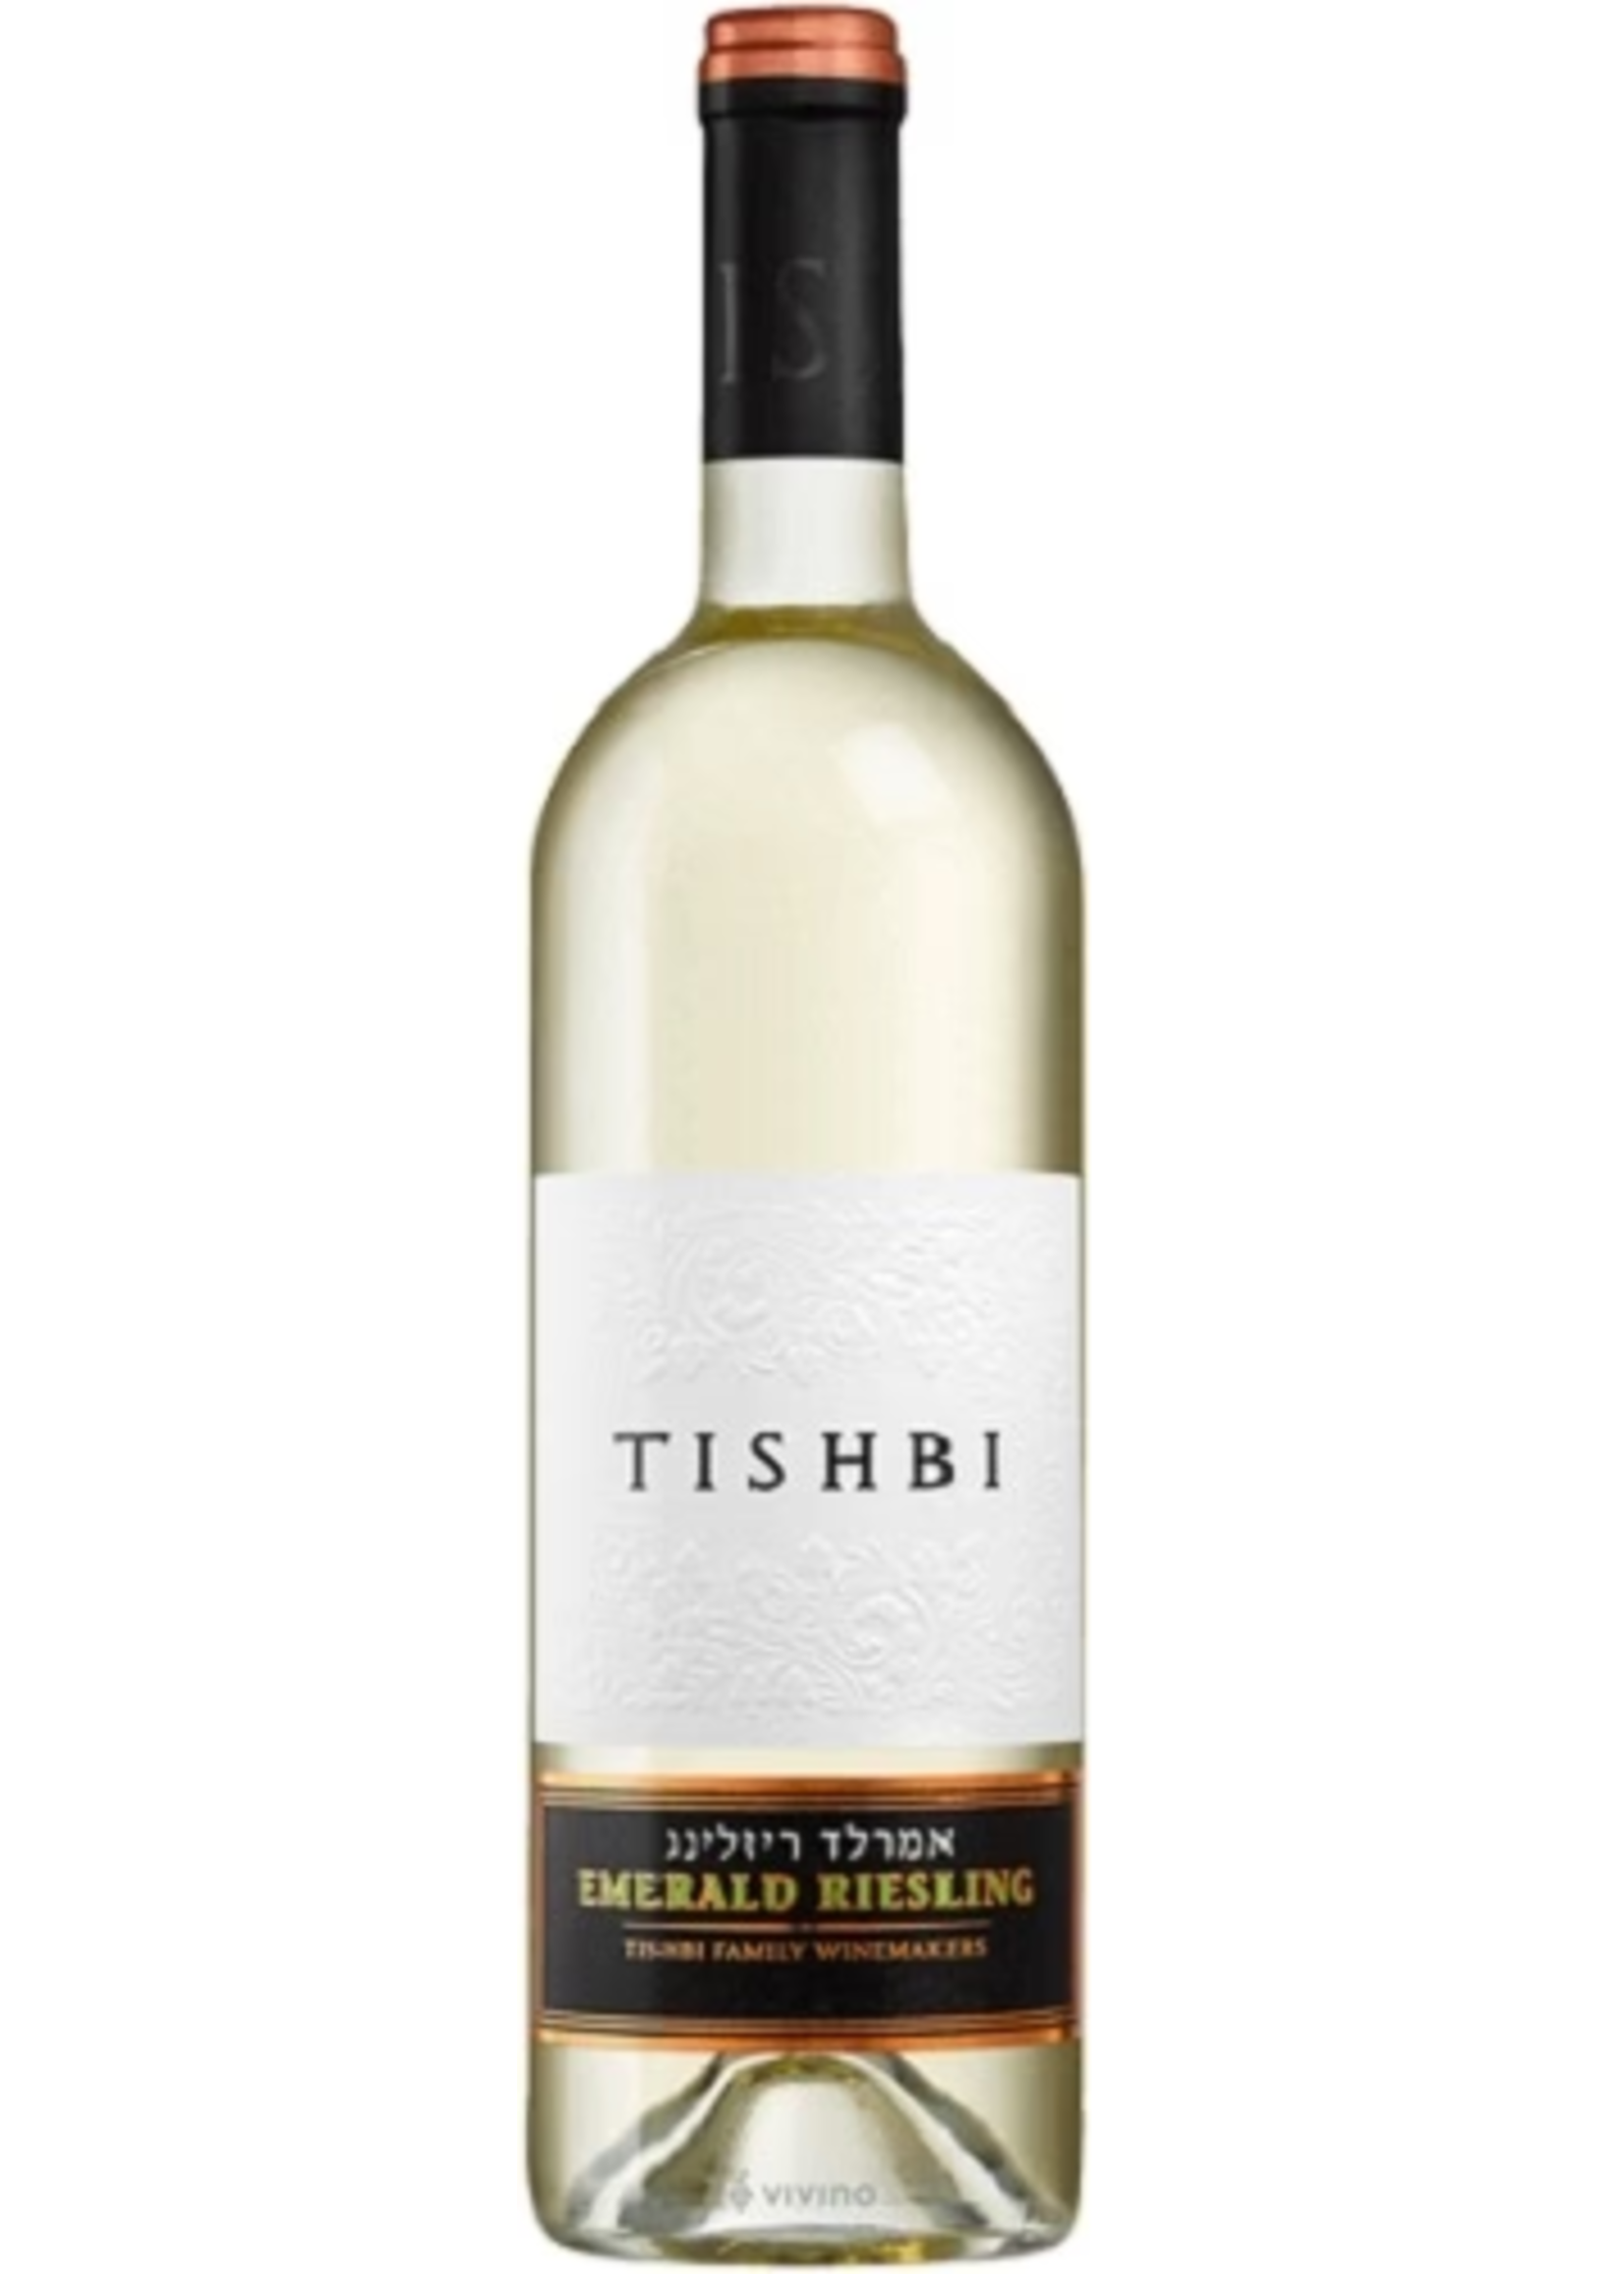 Tishbi Winery Tishbi Winery / Emerald Riesling 2021 / 750mL